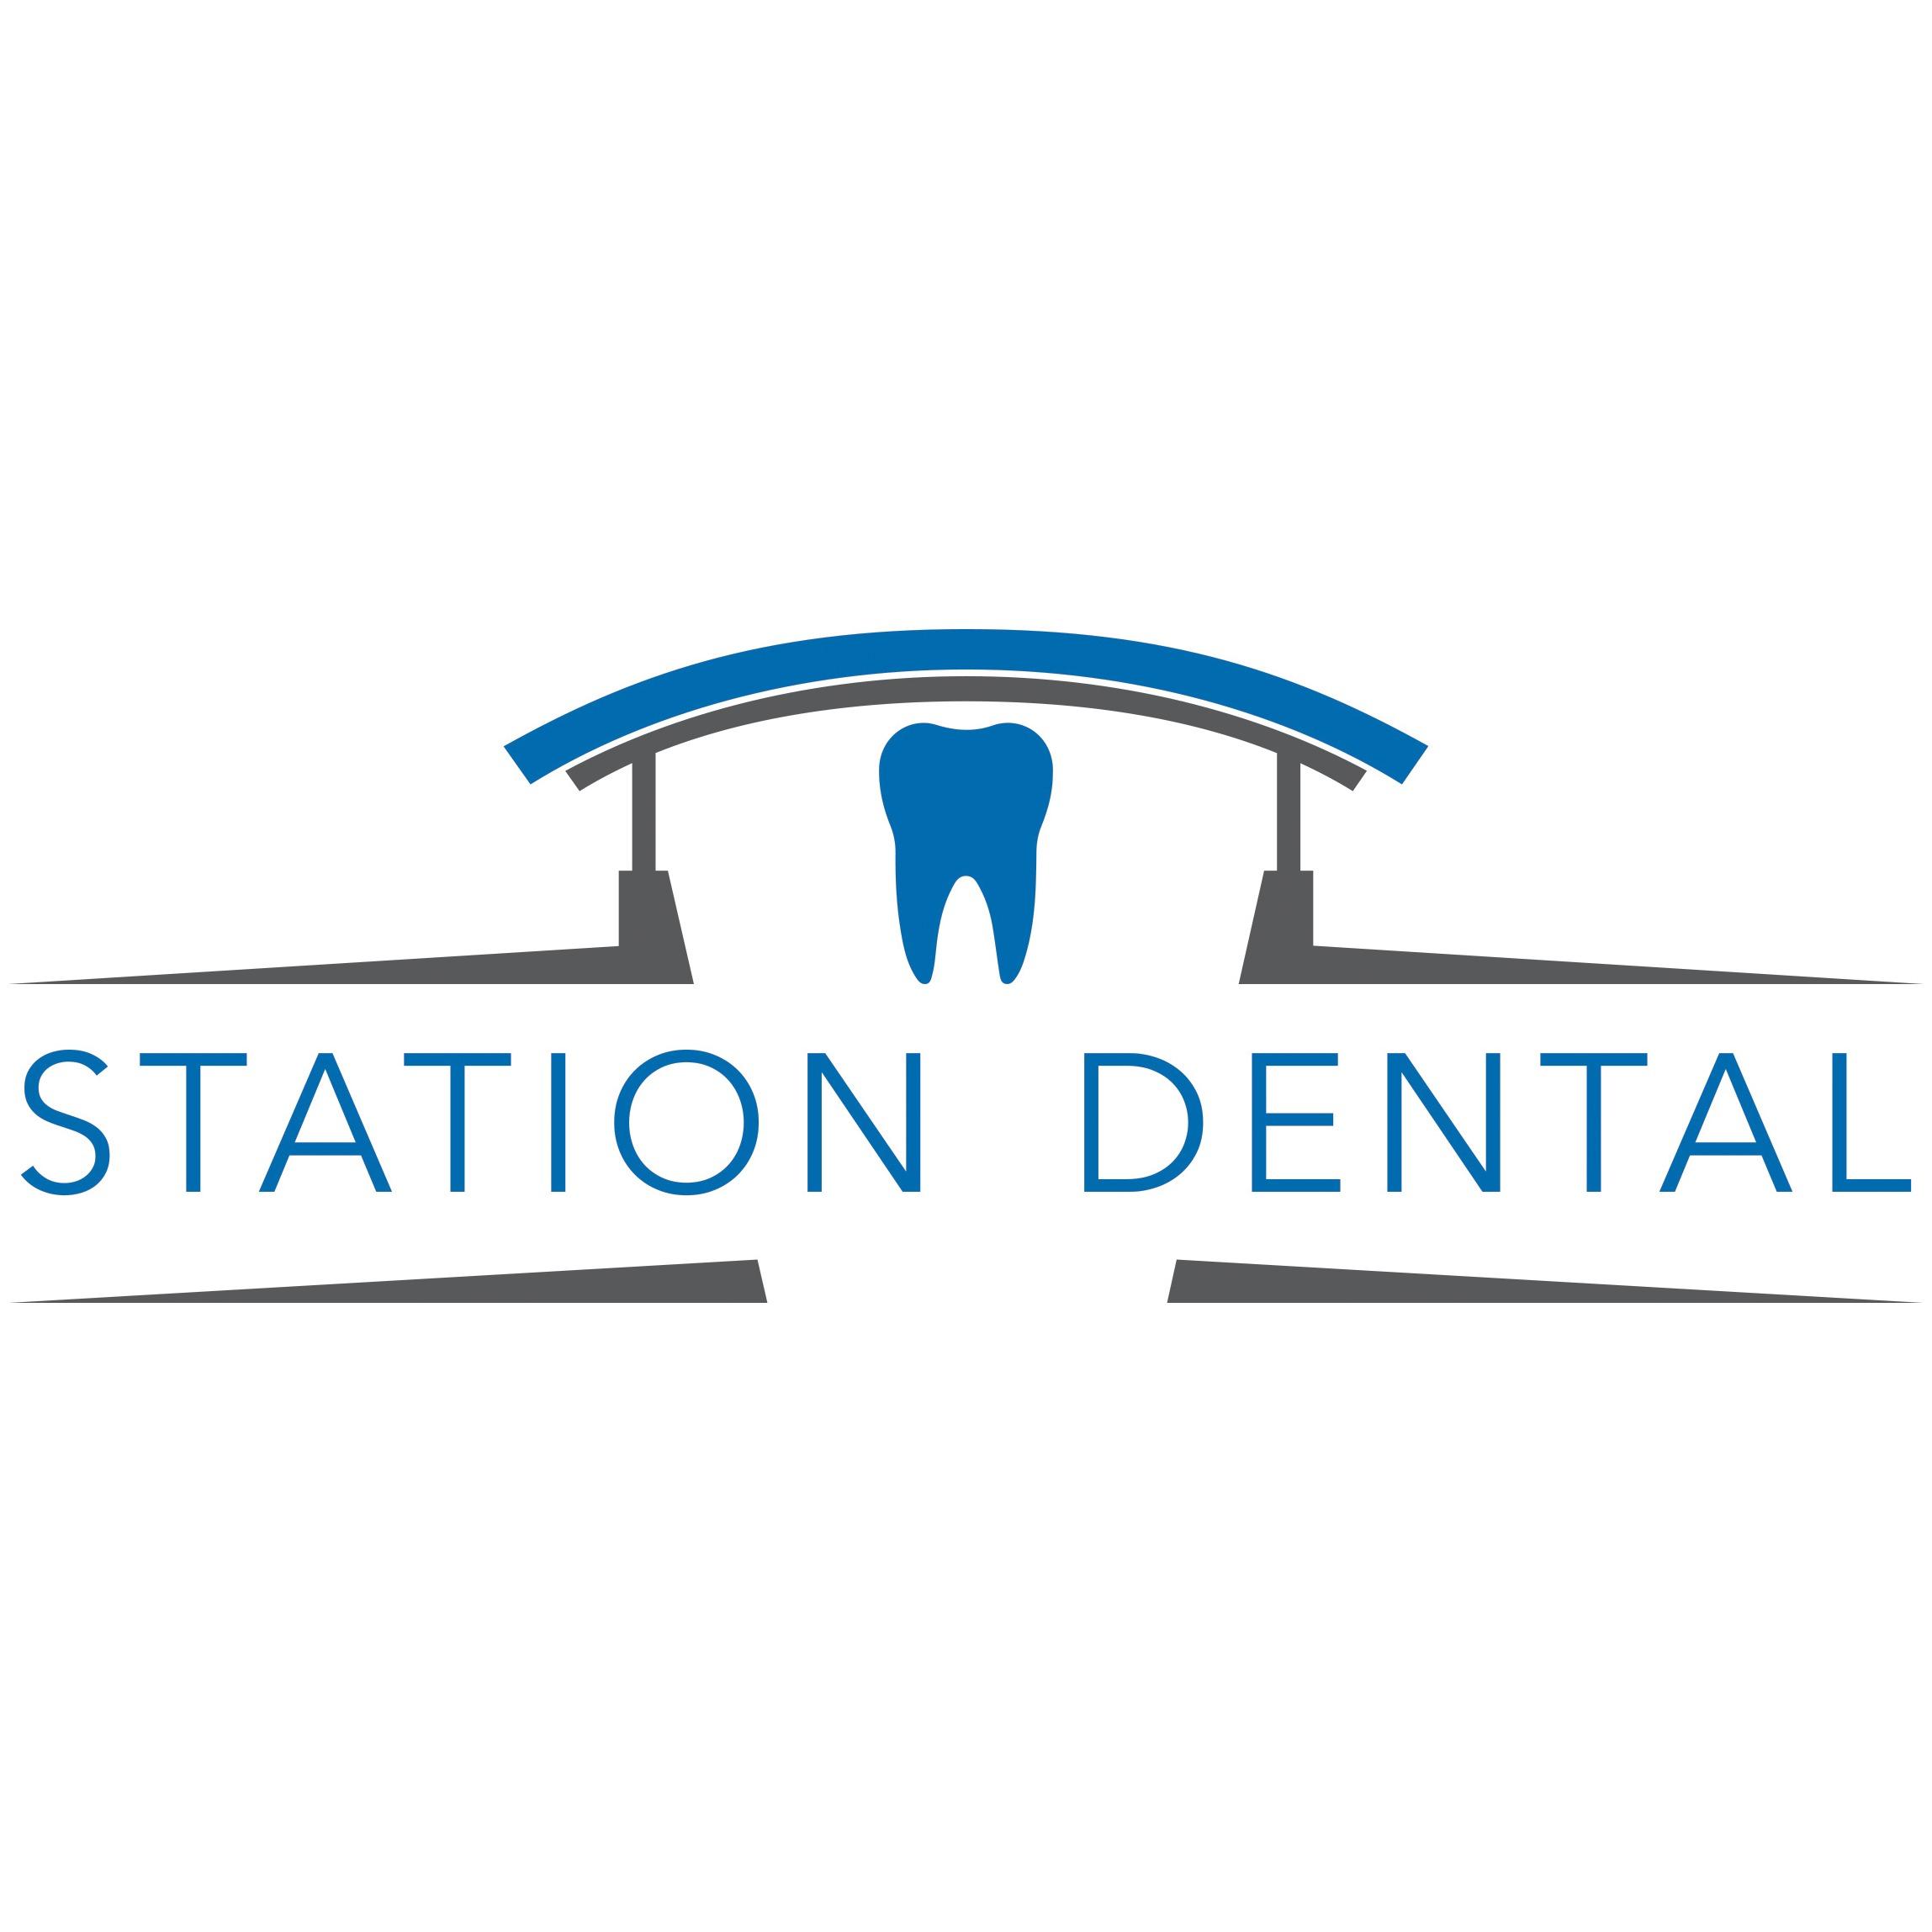 Station Dental Aurora Logo